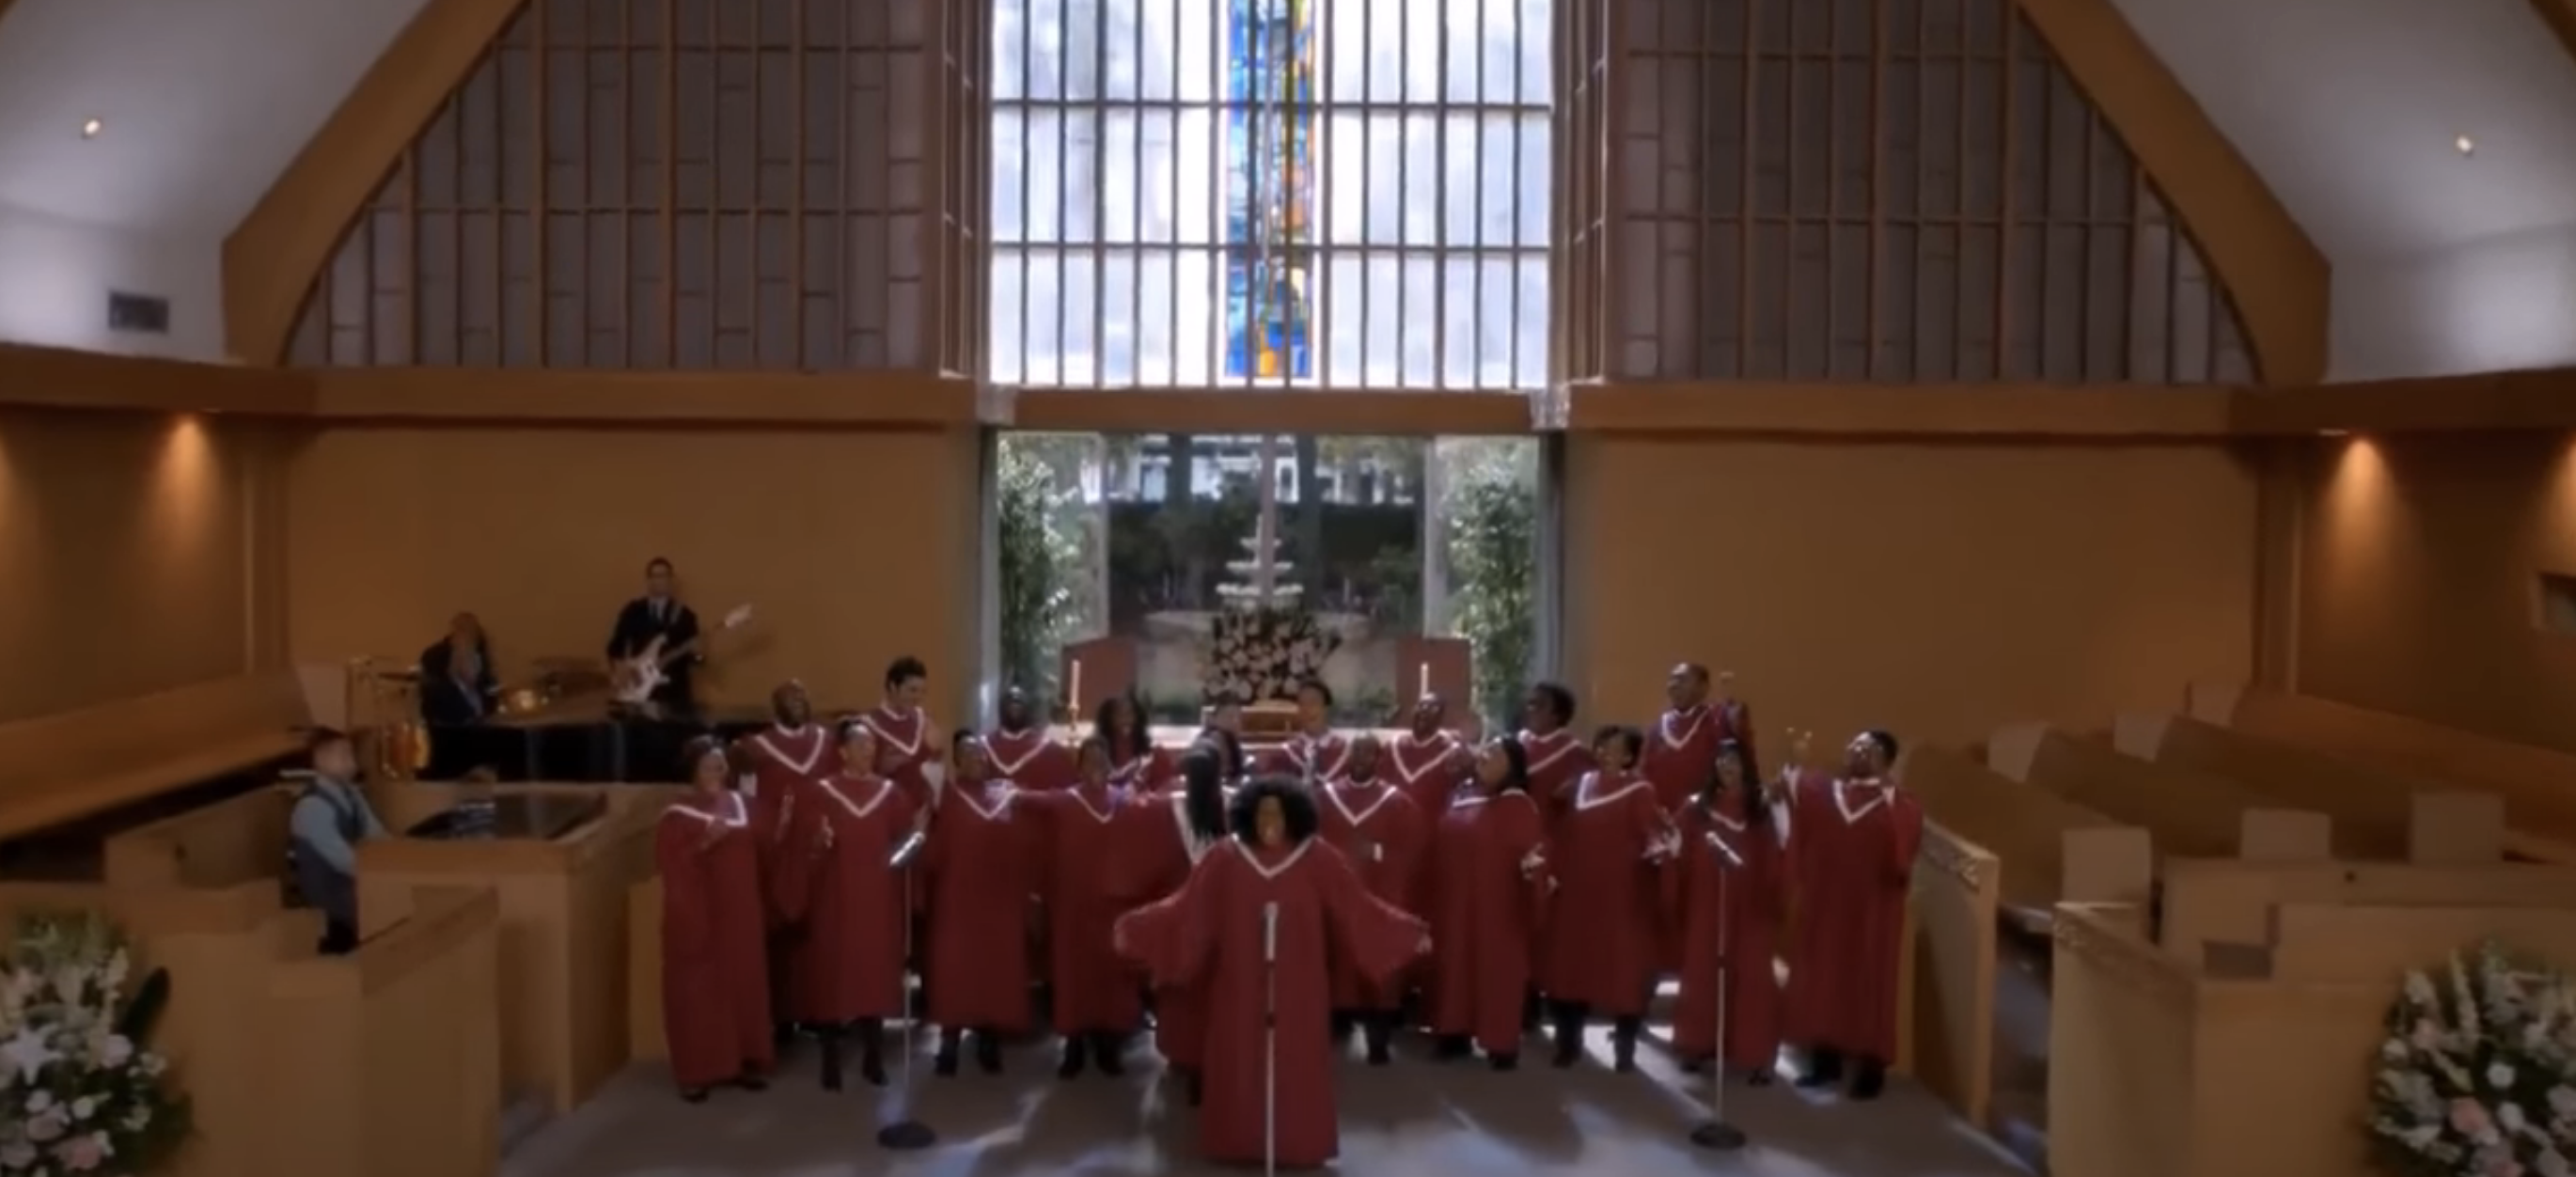 choir in a church